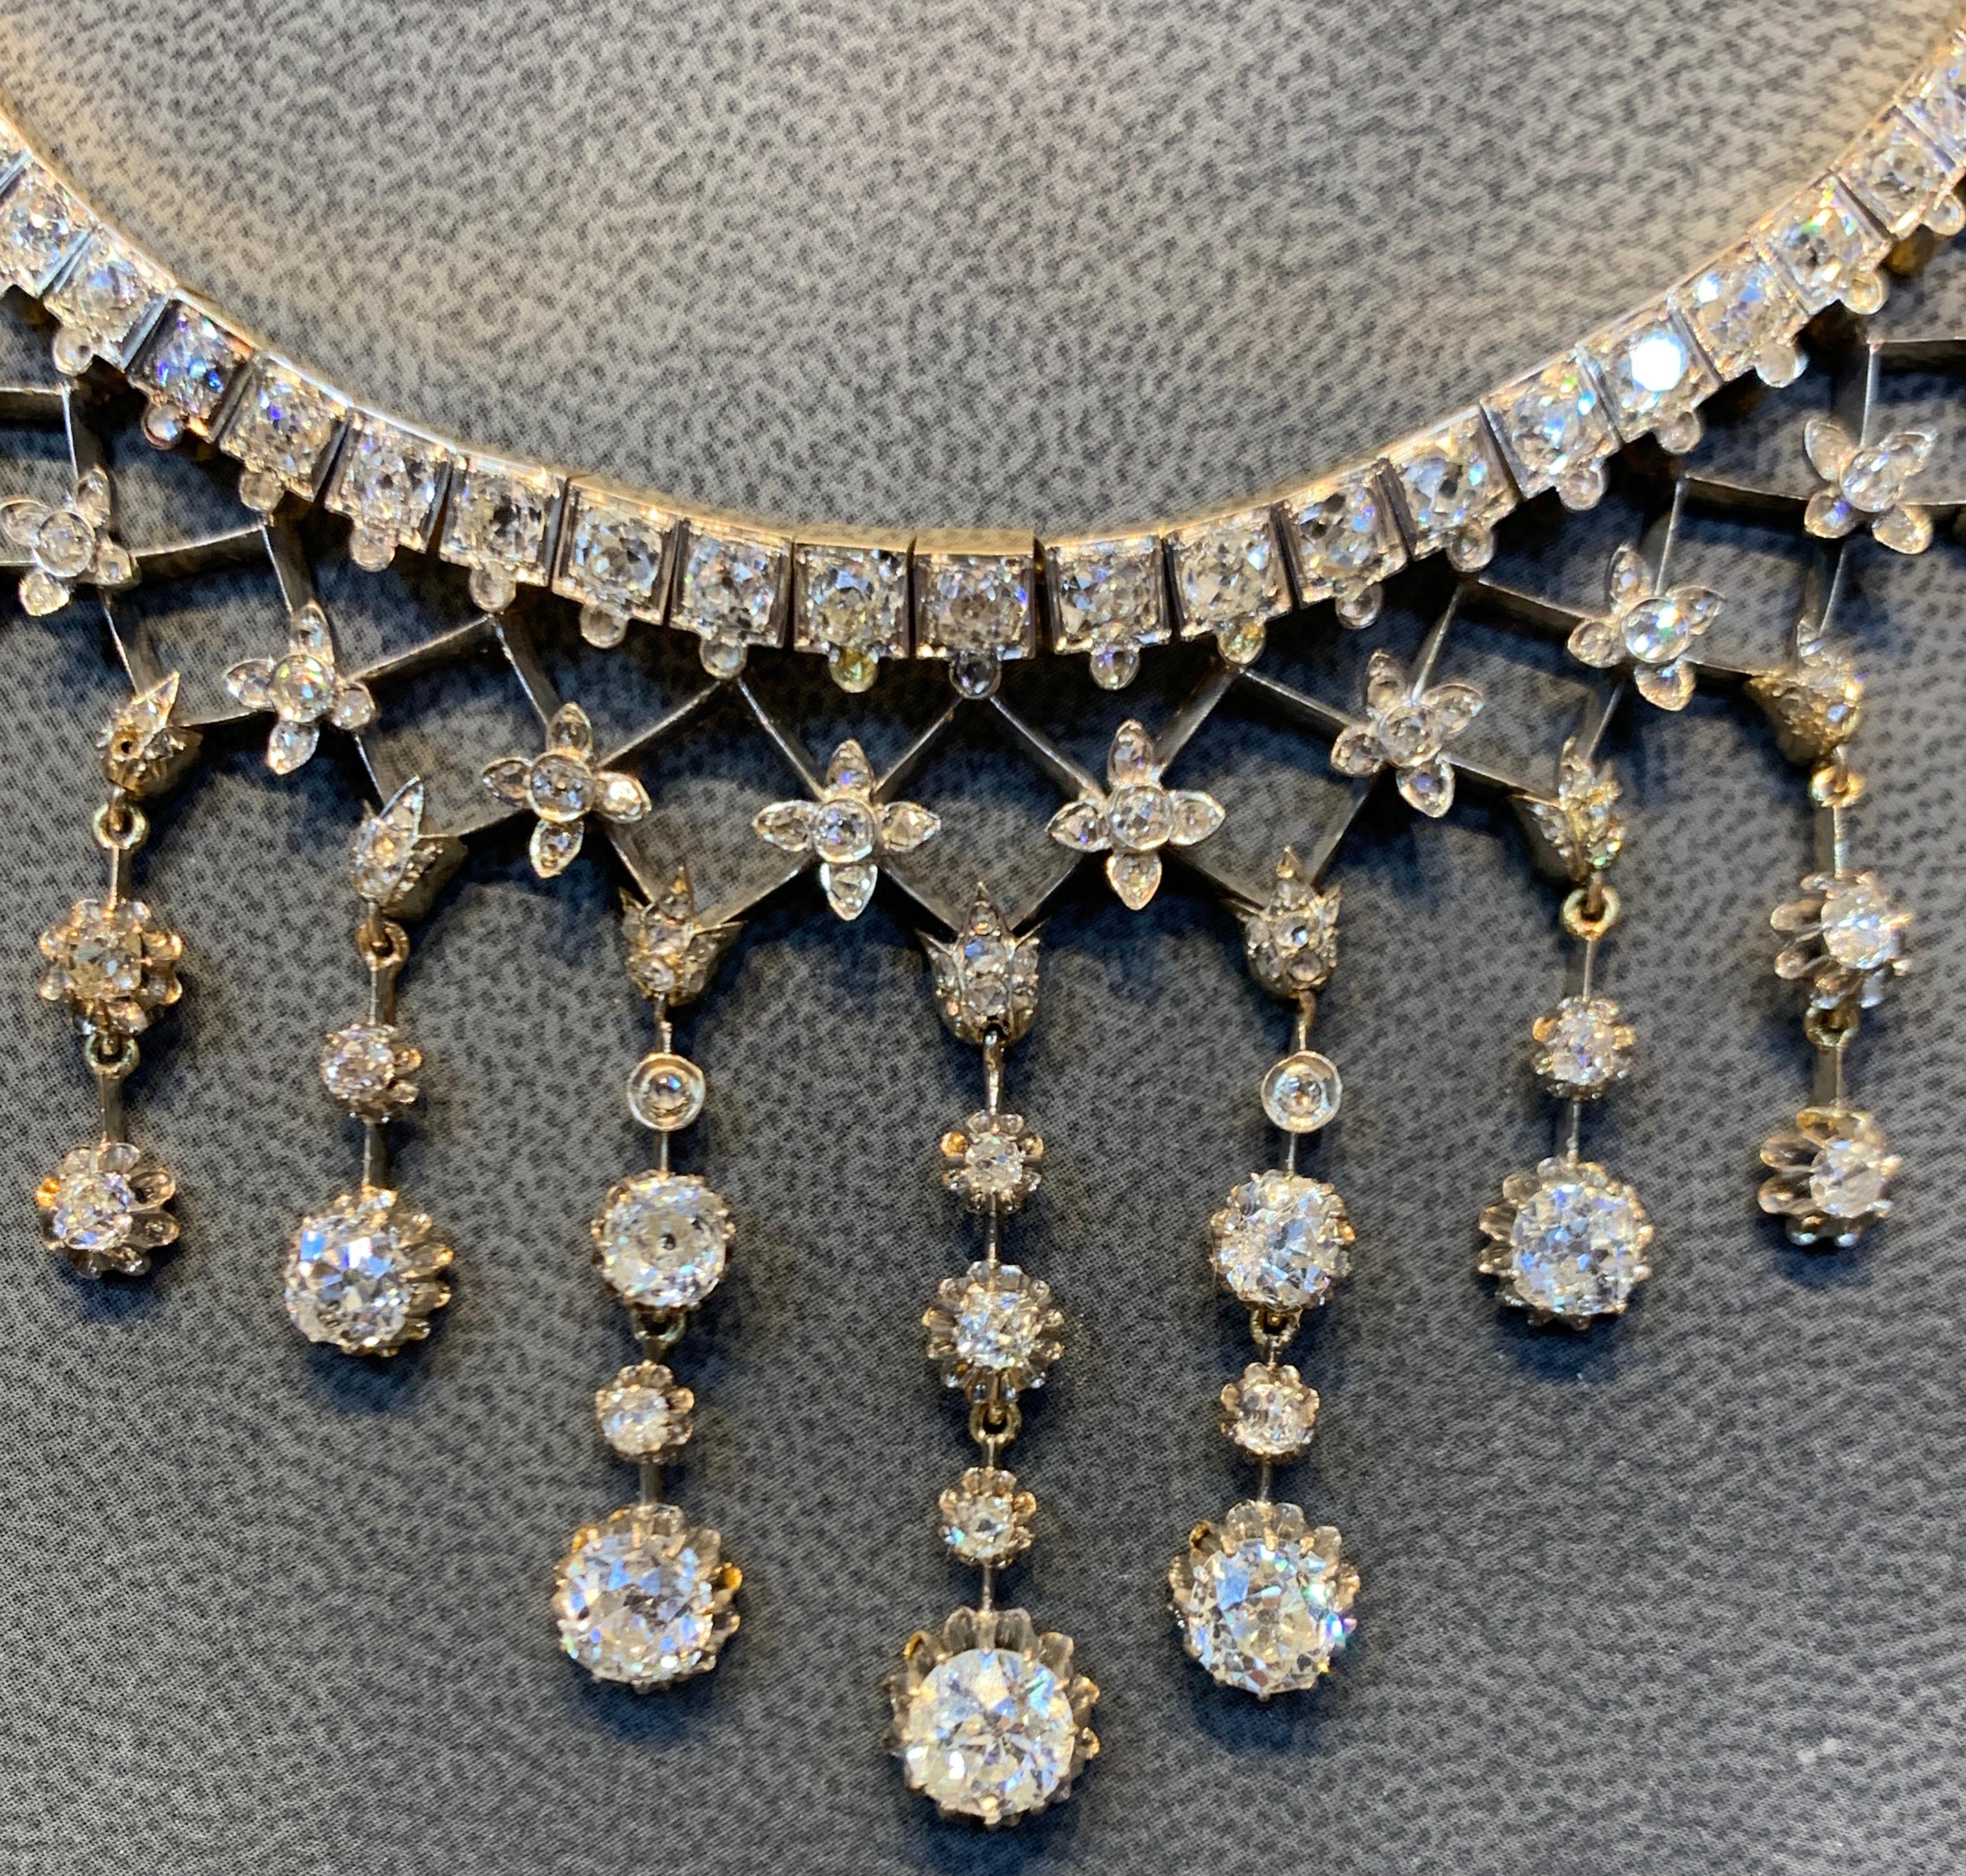 Antique collier de diamants taillés à la mine, fabriqué vers 1900
Type d'or : Argent et or 
Environ 20.00 Cts de diamants 
Mesures : 15